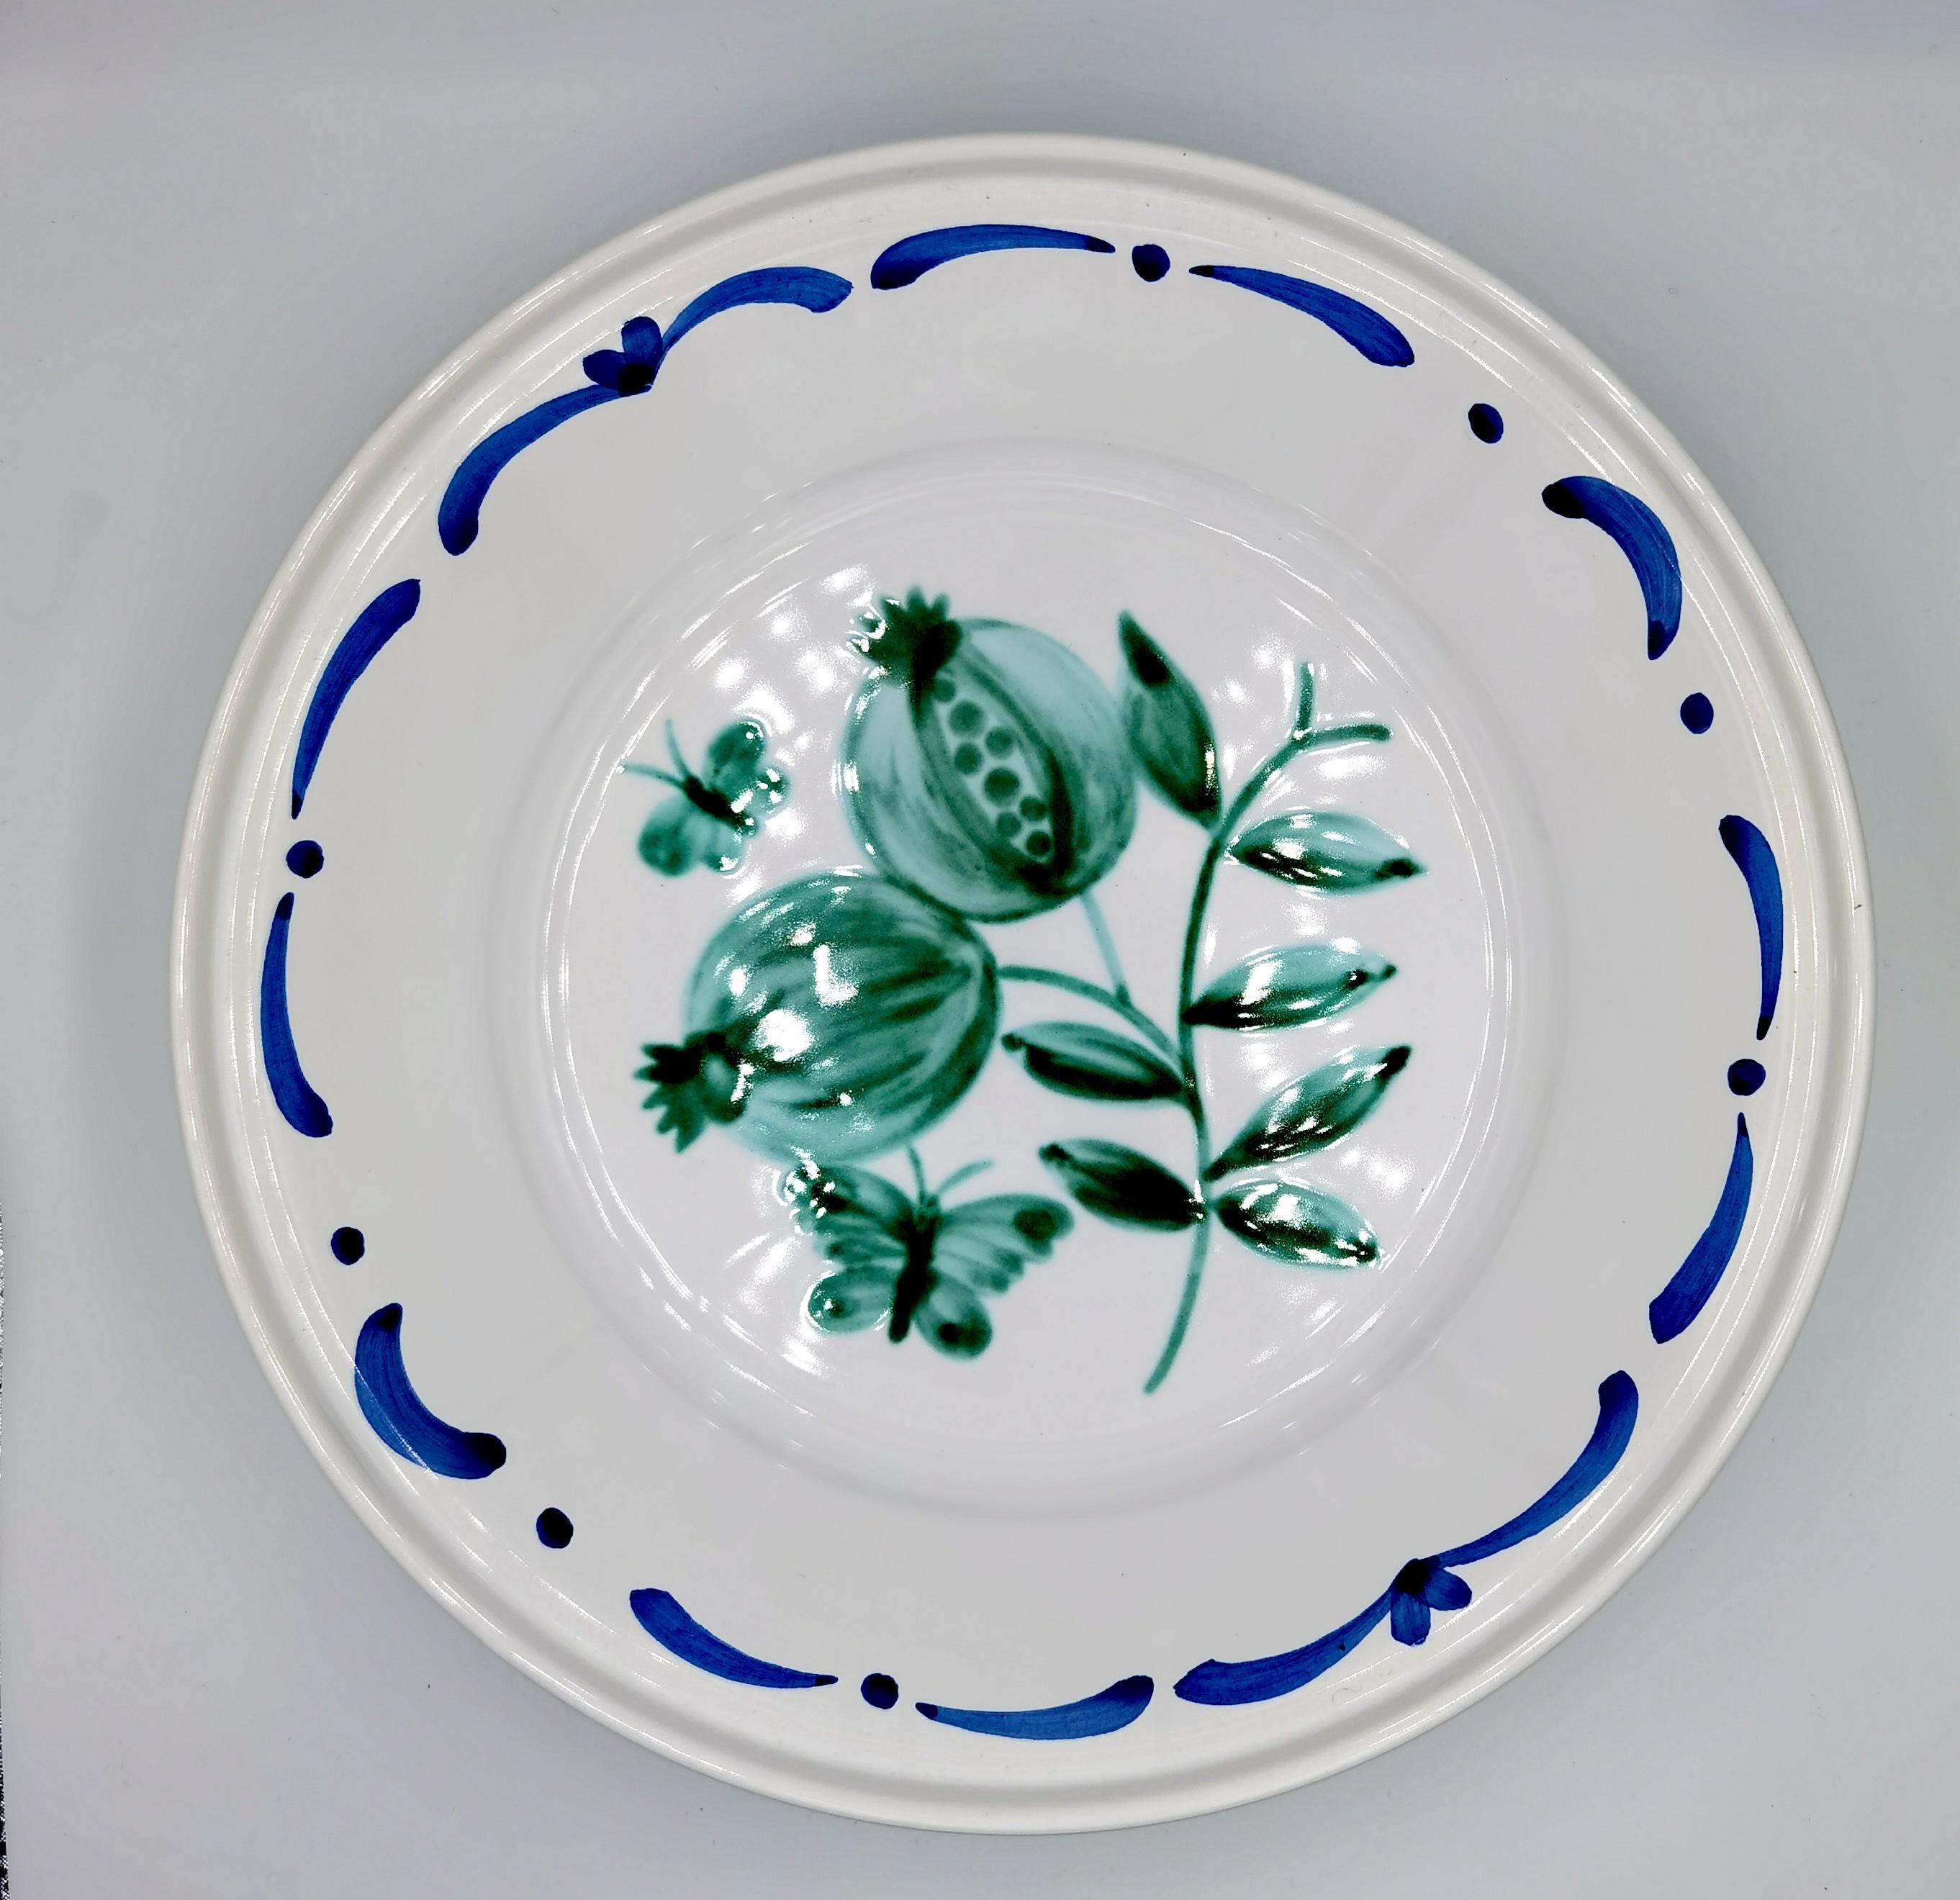 Große freihändig bemalte Keramikschale im Landhausstil. Verziert mit einem handgemalten grünen Granatapfeldekor in der Mitte mit Schmetterlingen und einer freihändig gemalten Girlande. Die Girlande kann in verschiedenen Farben bestellt werden.